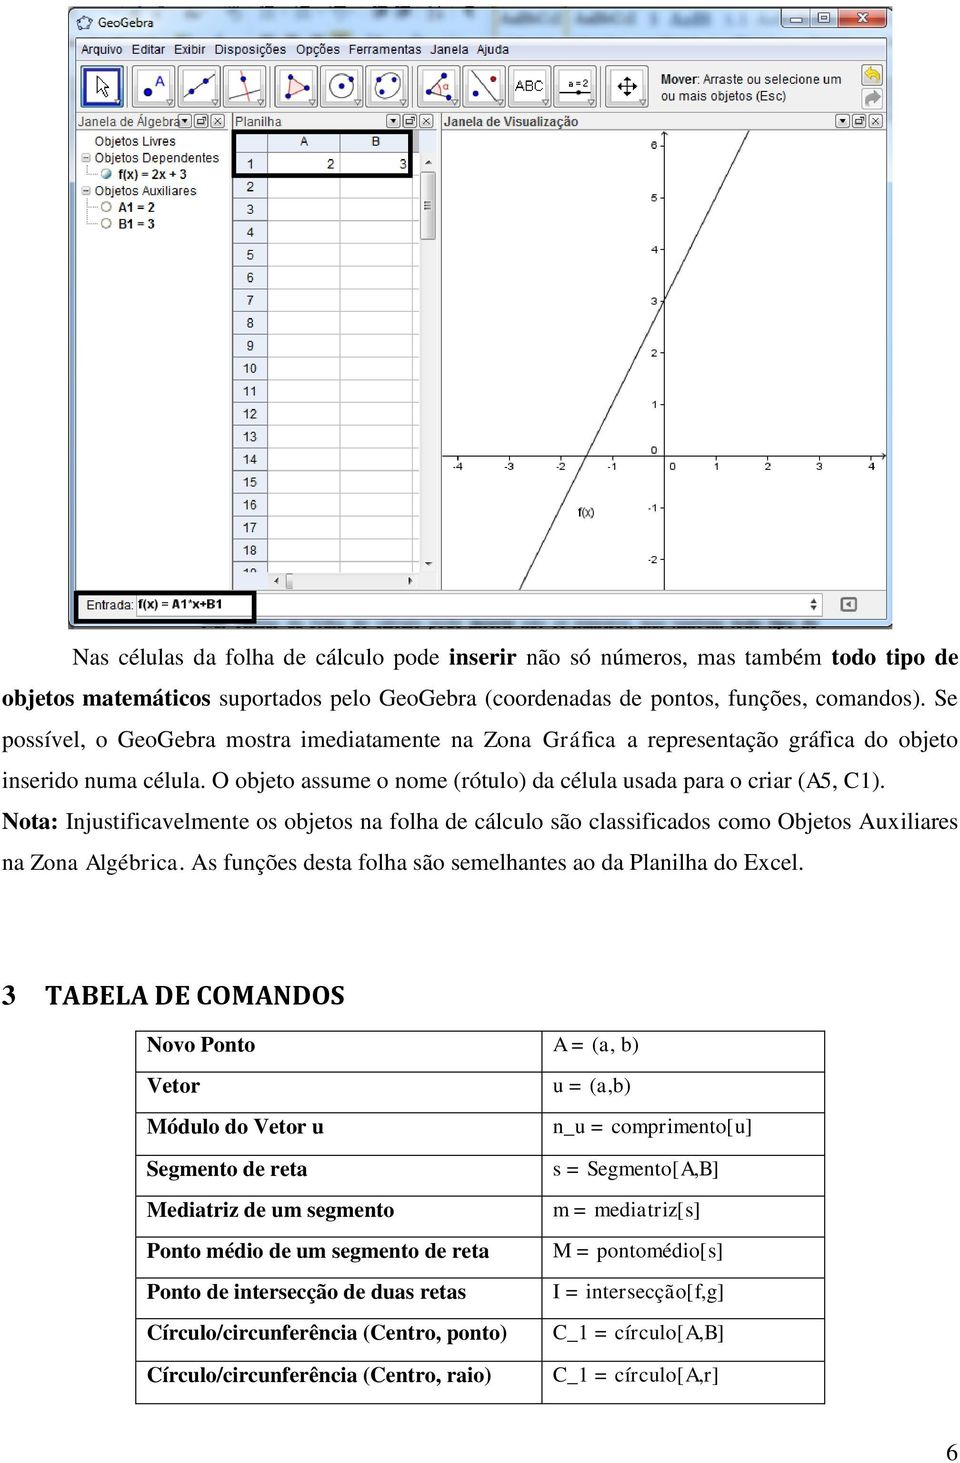 Nota: Injustificavelmente os objetos na folha de cálculo são classificados como Objetos Auxiliares na Zona Algébrica. As funções desta folha são semelhantes ao da Planilha do Excel.